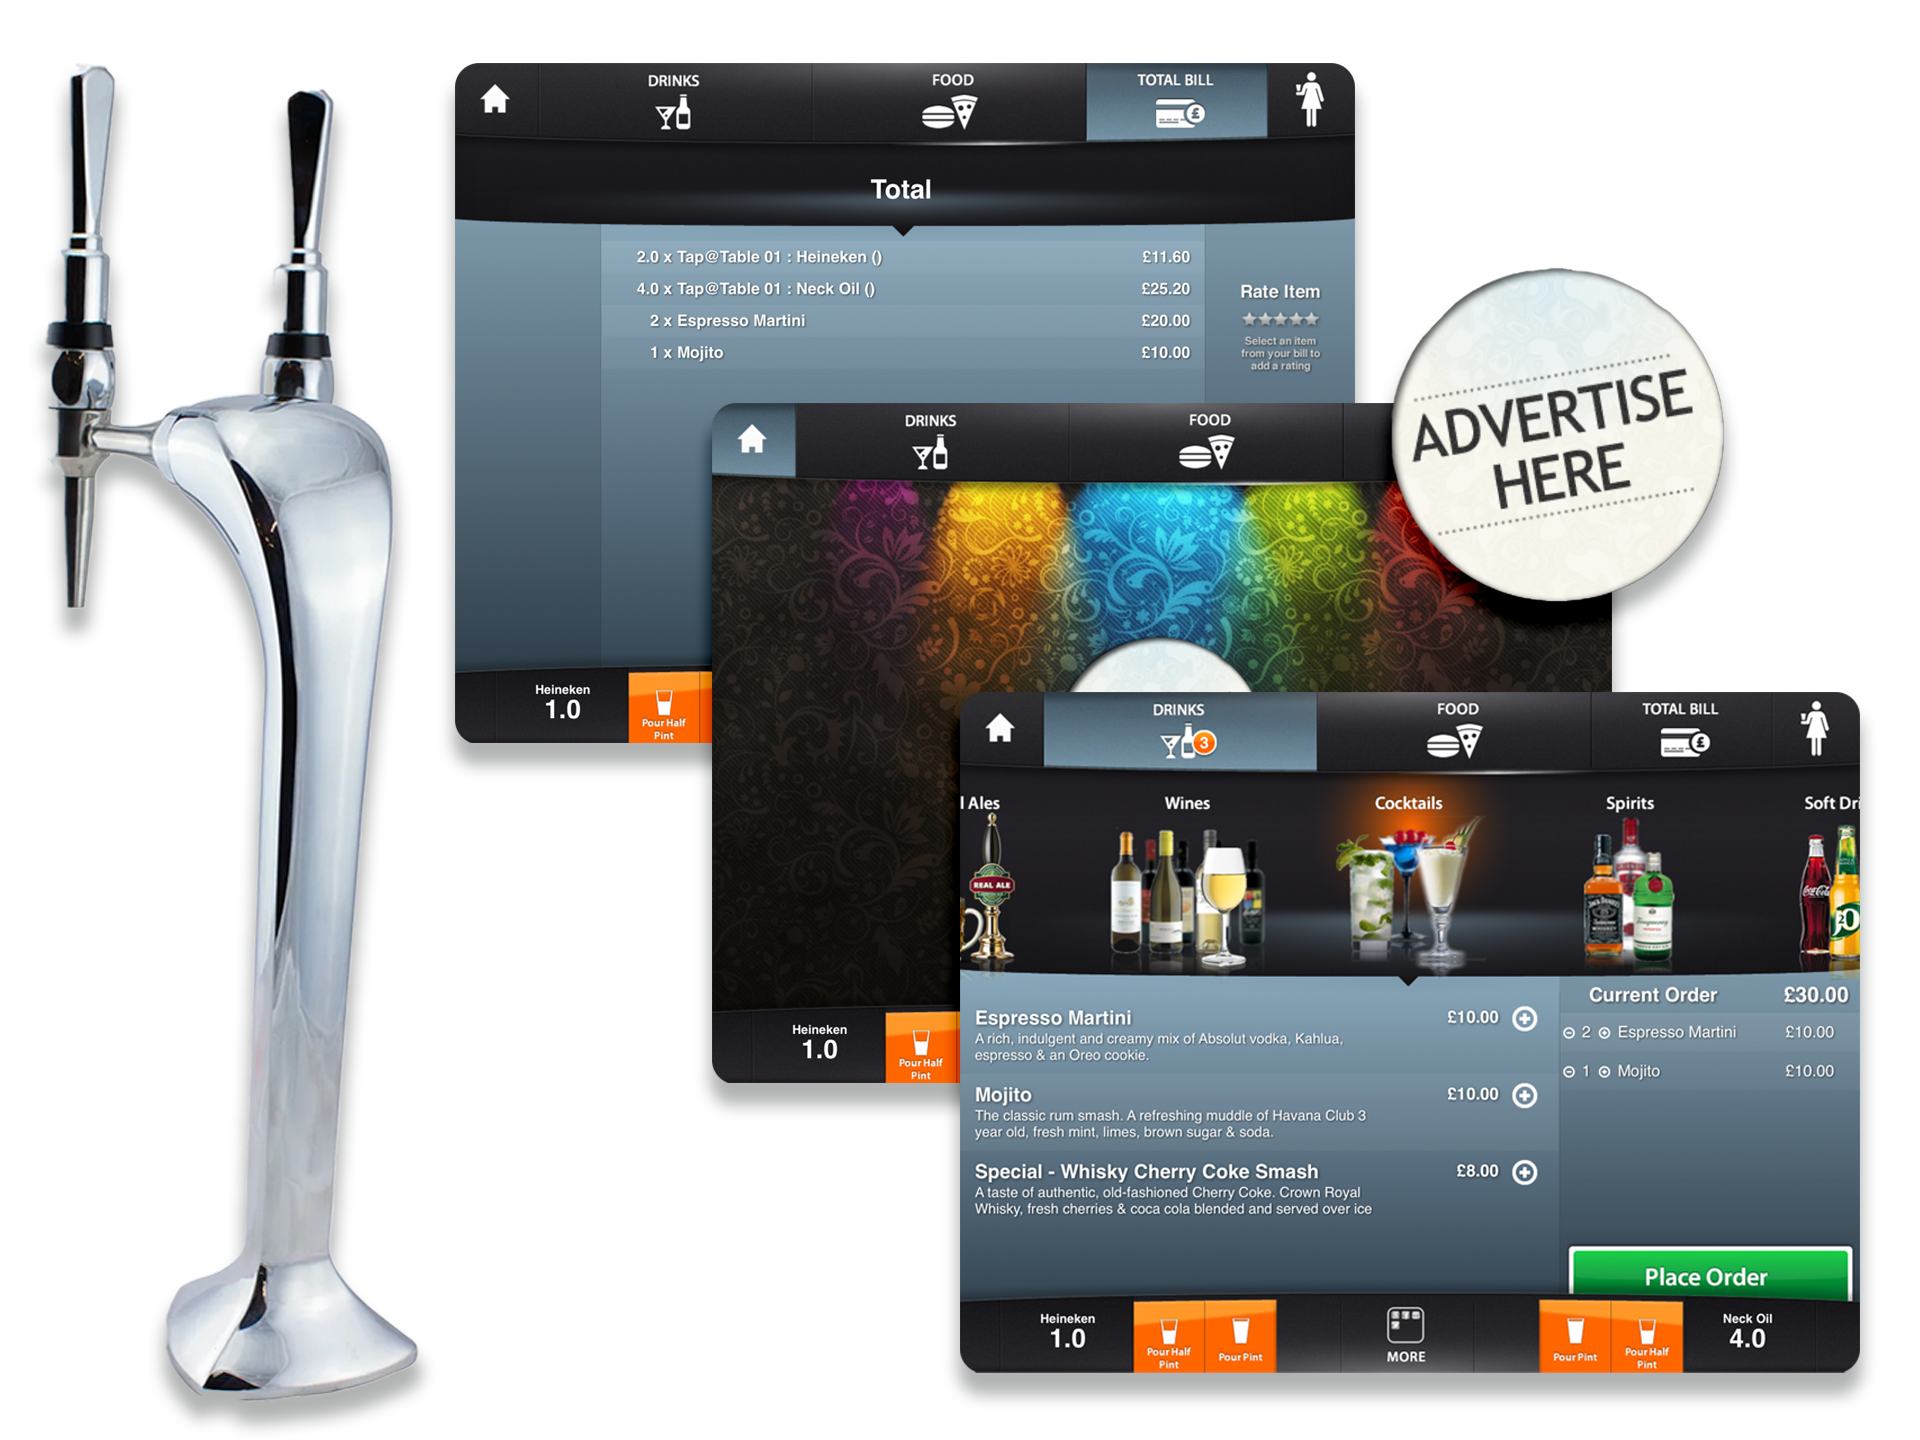 Self-serve beer tap and iPad menu screens